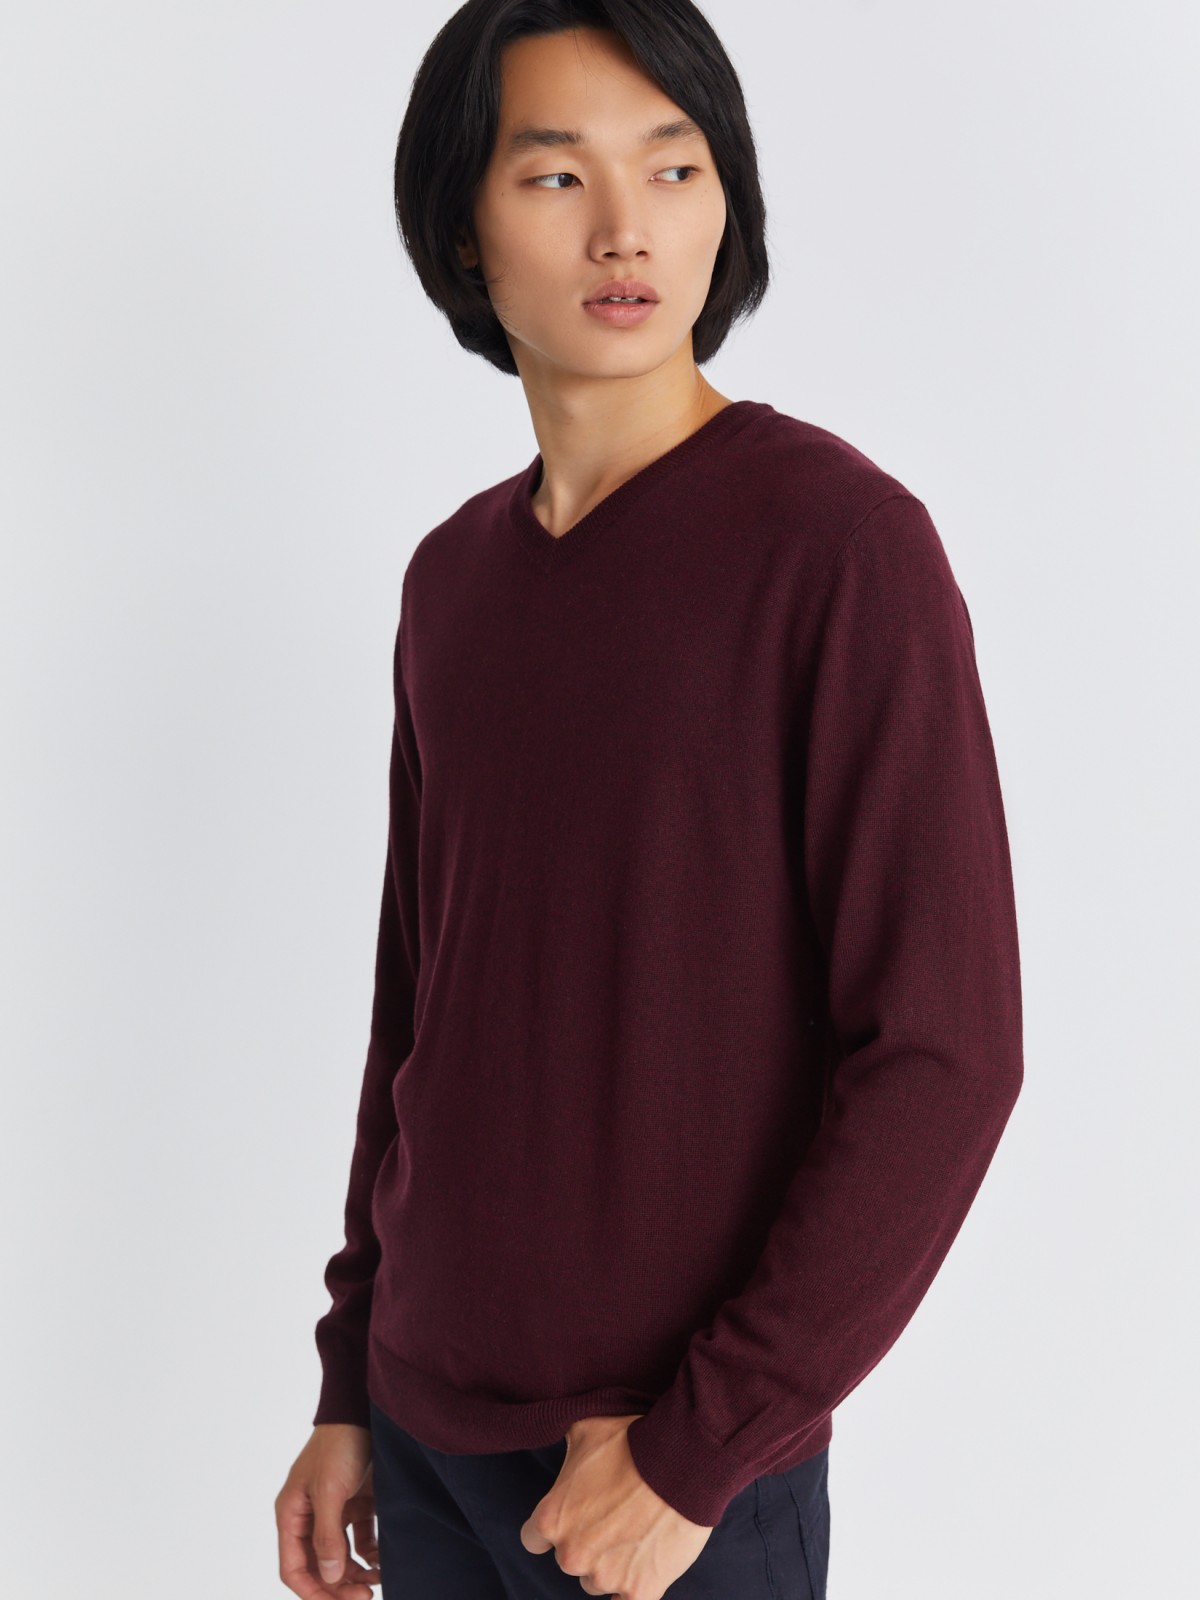 Шерстяной трикотажный пуловер с треугольным вырезом и длинным рукавом zolla 013346163042, цвет бордо, размер M - фото 5